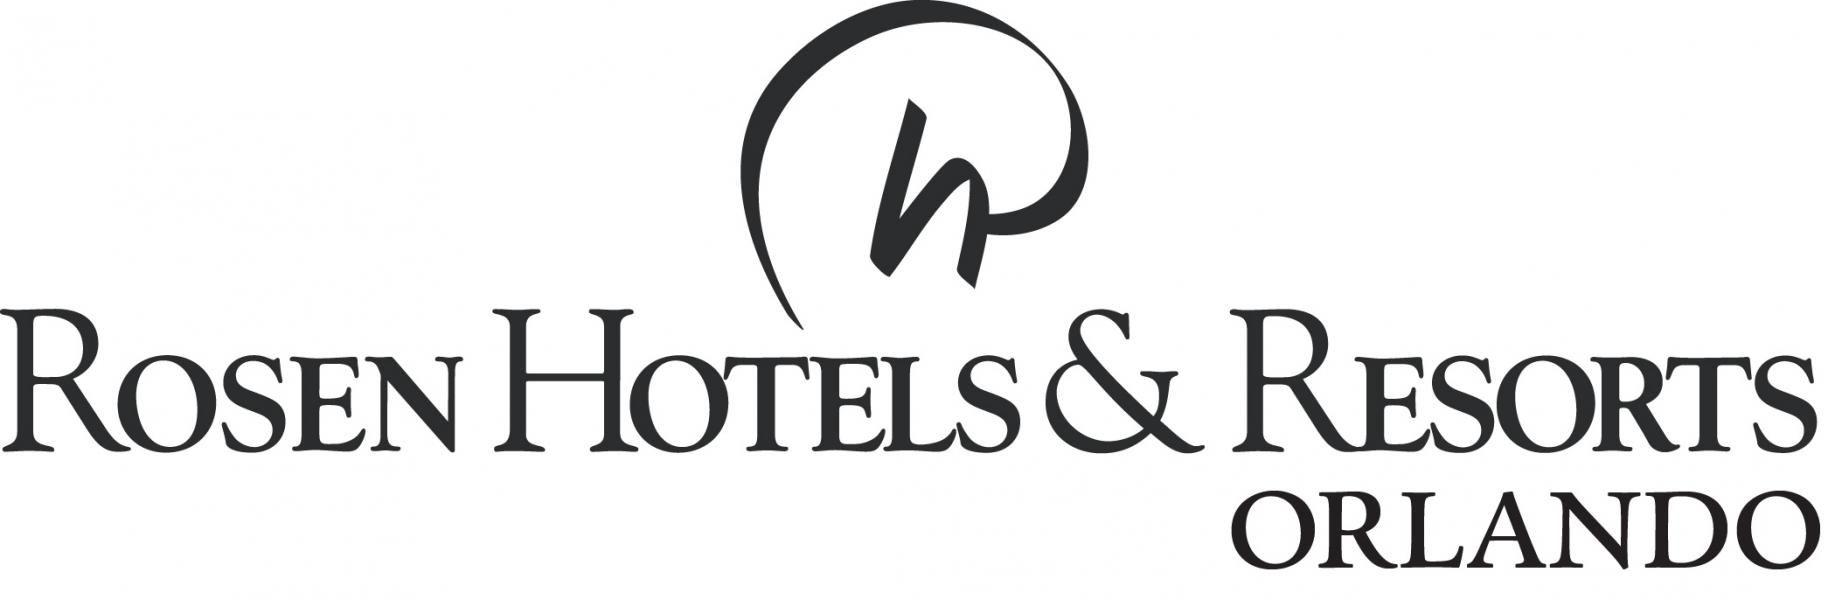 Rosen Logo - Logos. Rosen Hotels & Resorts